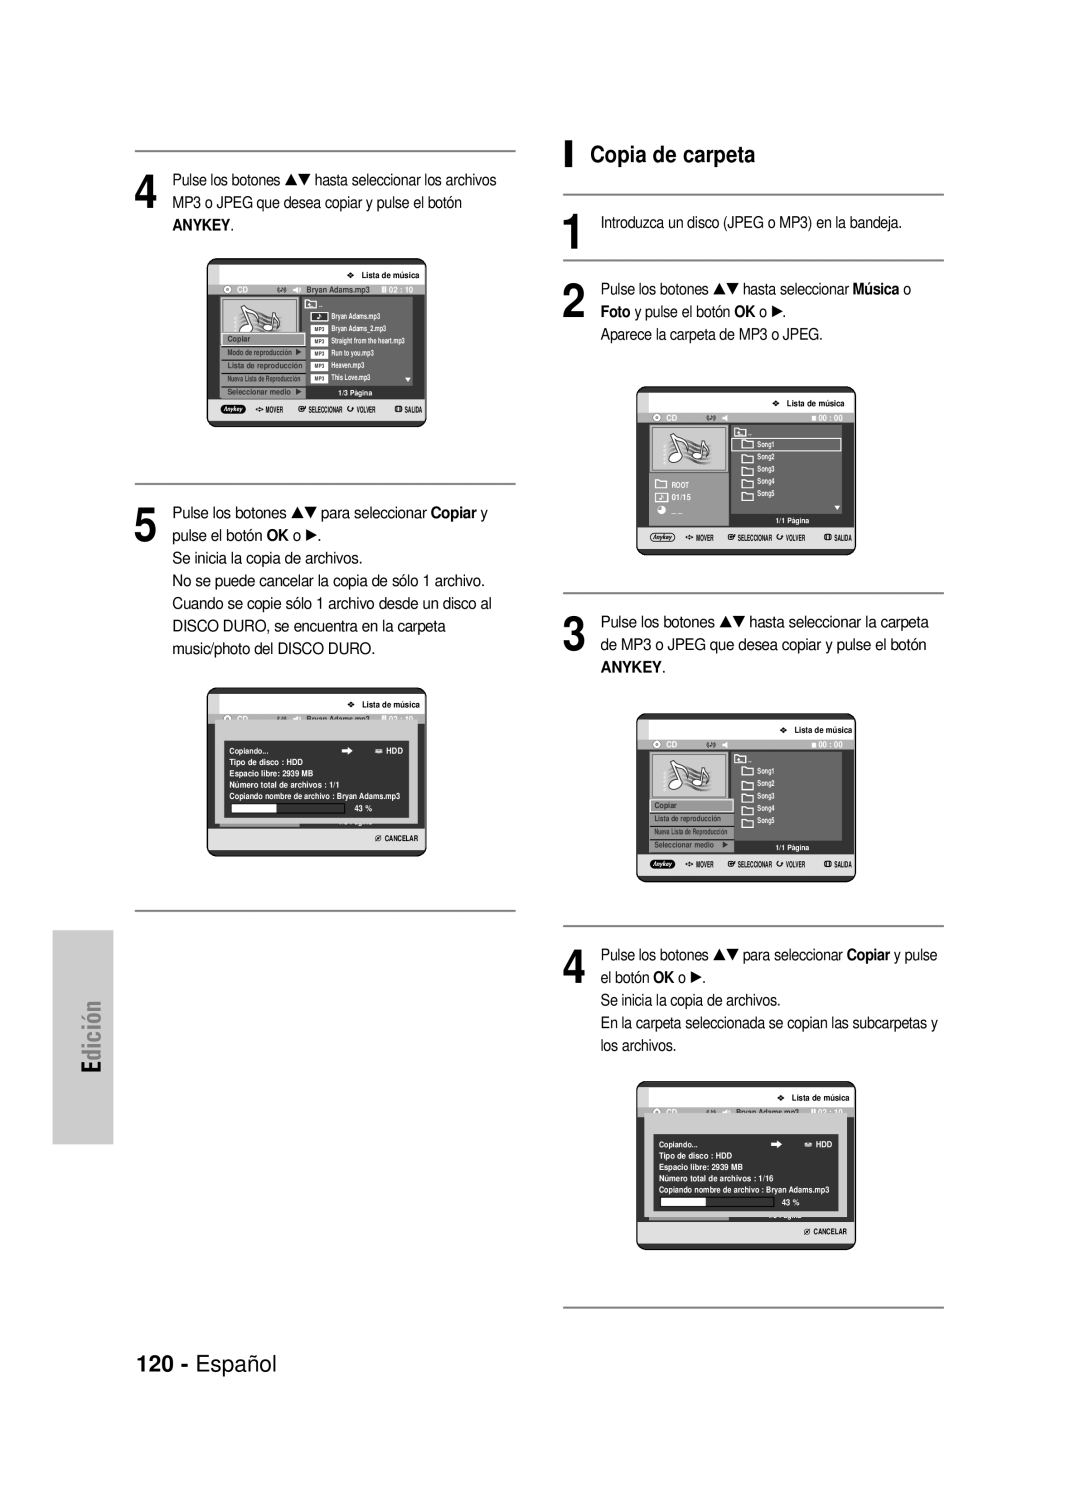 Samsung DVD-HR725/XEG manual Copia de carpeta, Español, Edición, MP3 o JPEG que desea copiar y pulse el botón, Anykey 